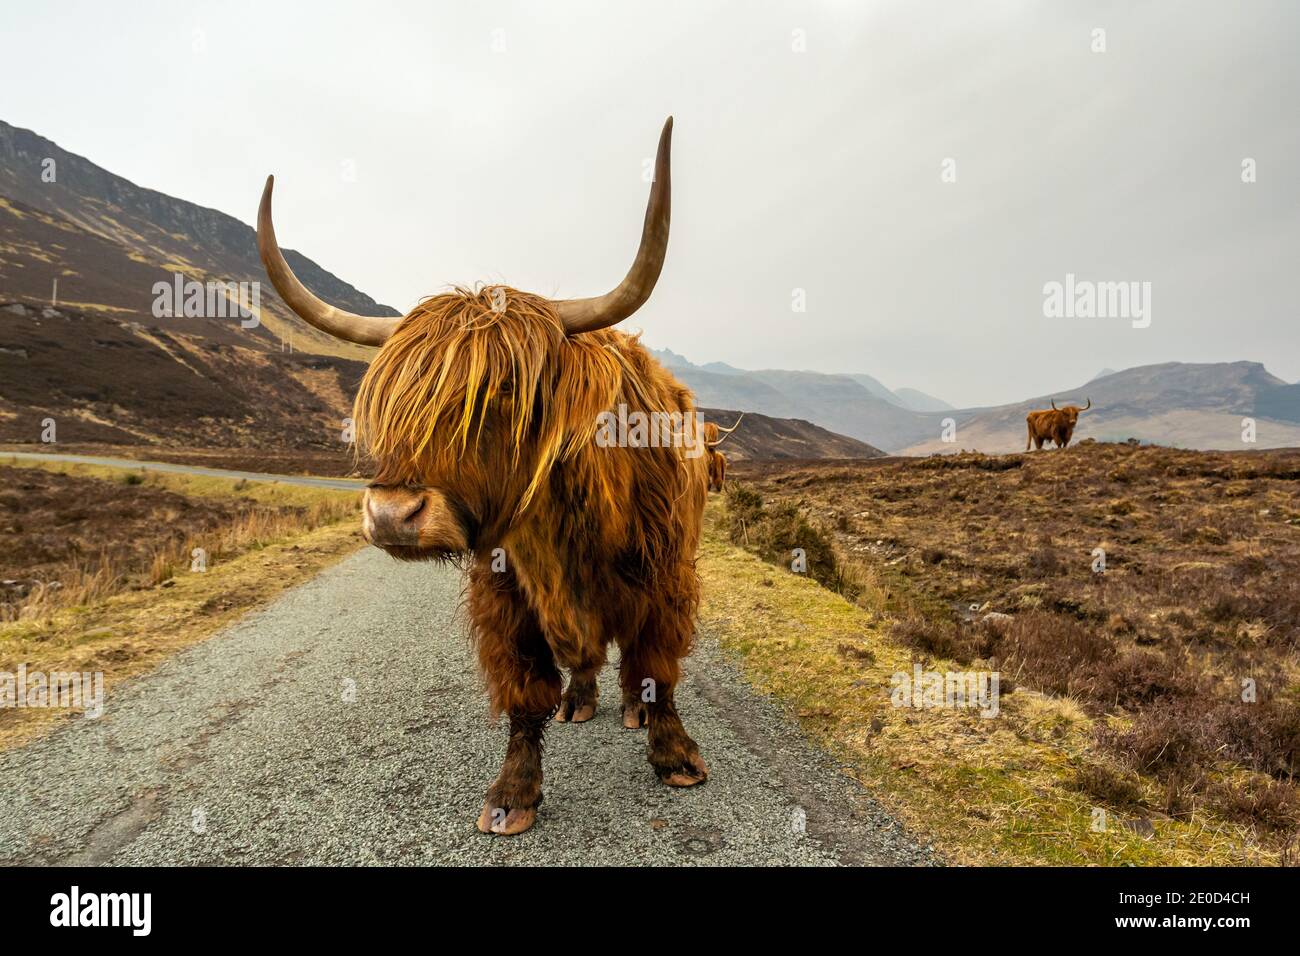 Highland cattle on the Isle of Skye near Elgol, Scotland, UK Stock Photo